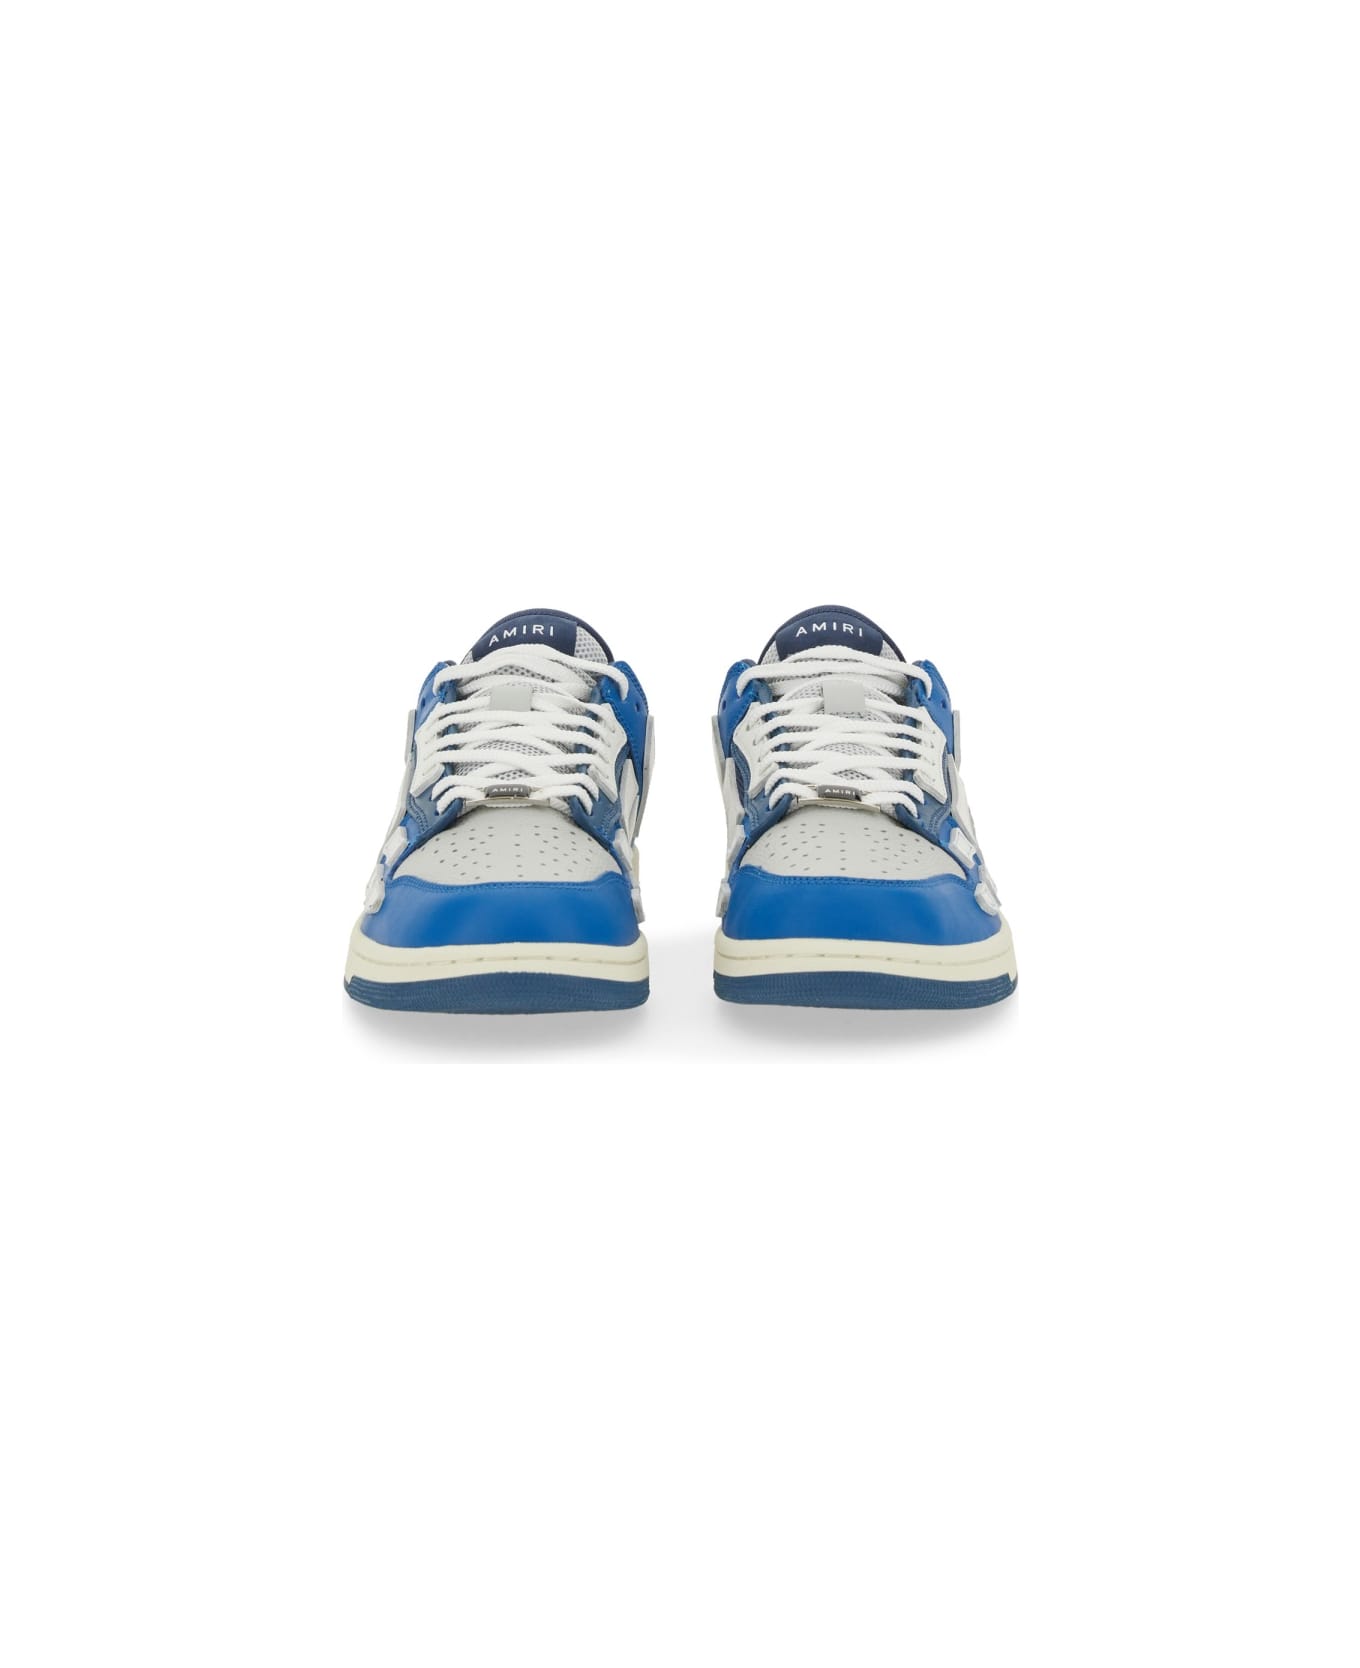 AMIRI Sneaker "skel" - BLUE